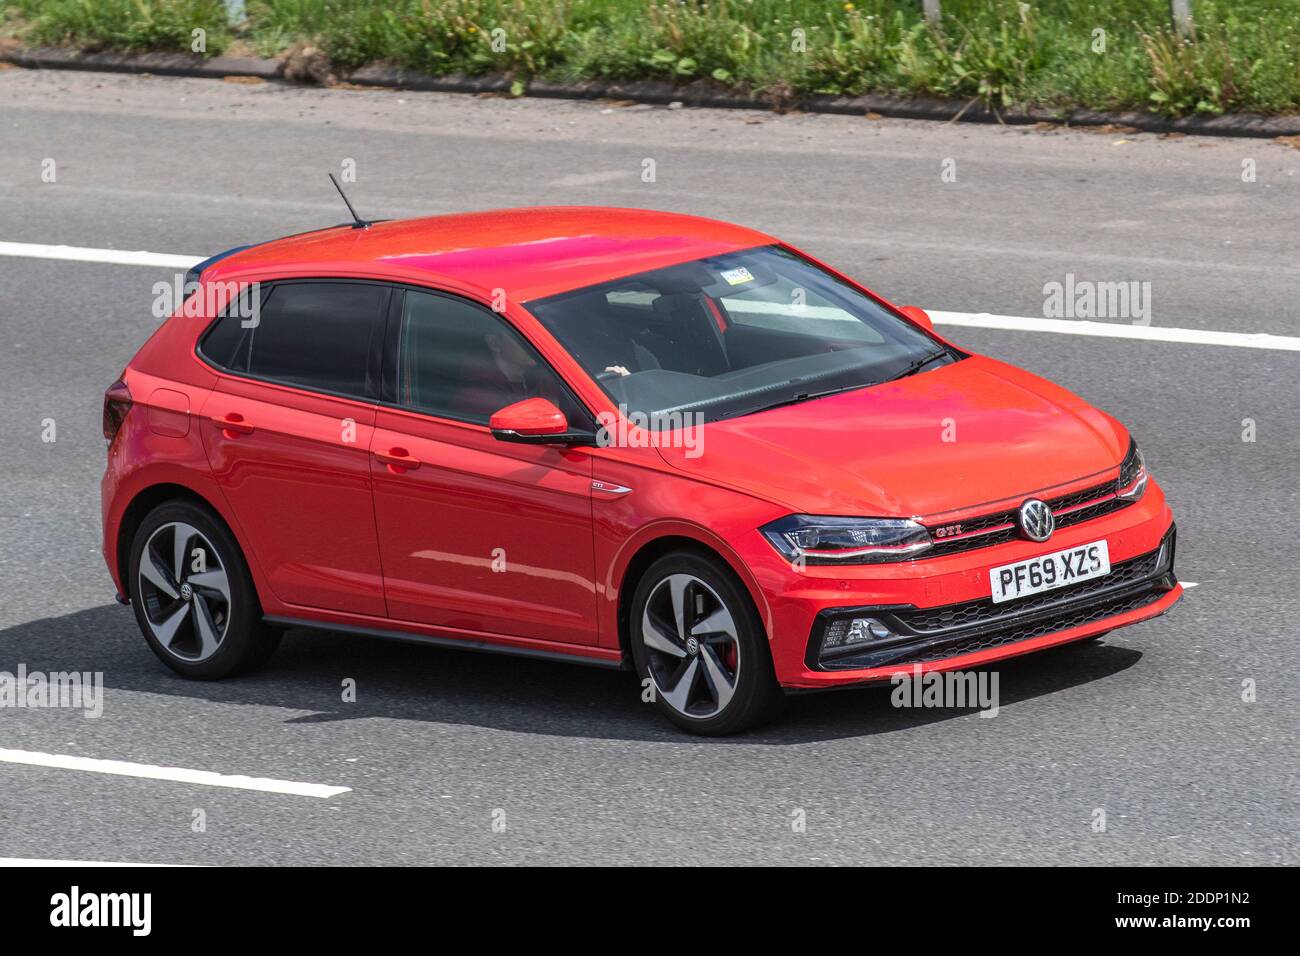 2020 Red VW Volkswagen Polo GTI Plus TSI S-A; traffico veicolare, veicoli  in movimento, automobili, veicoli che guidano su strade del Regno Unito,  motori, motori sulla rete stradale dell'autostrada M6 del Regno